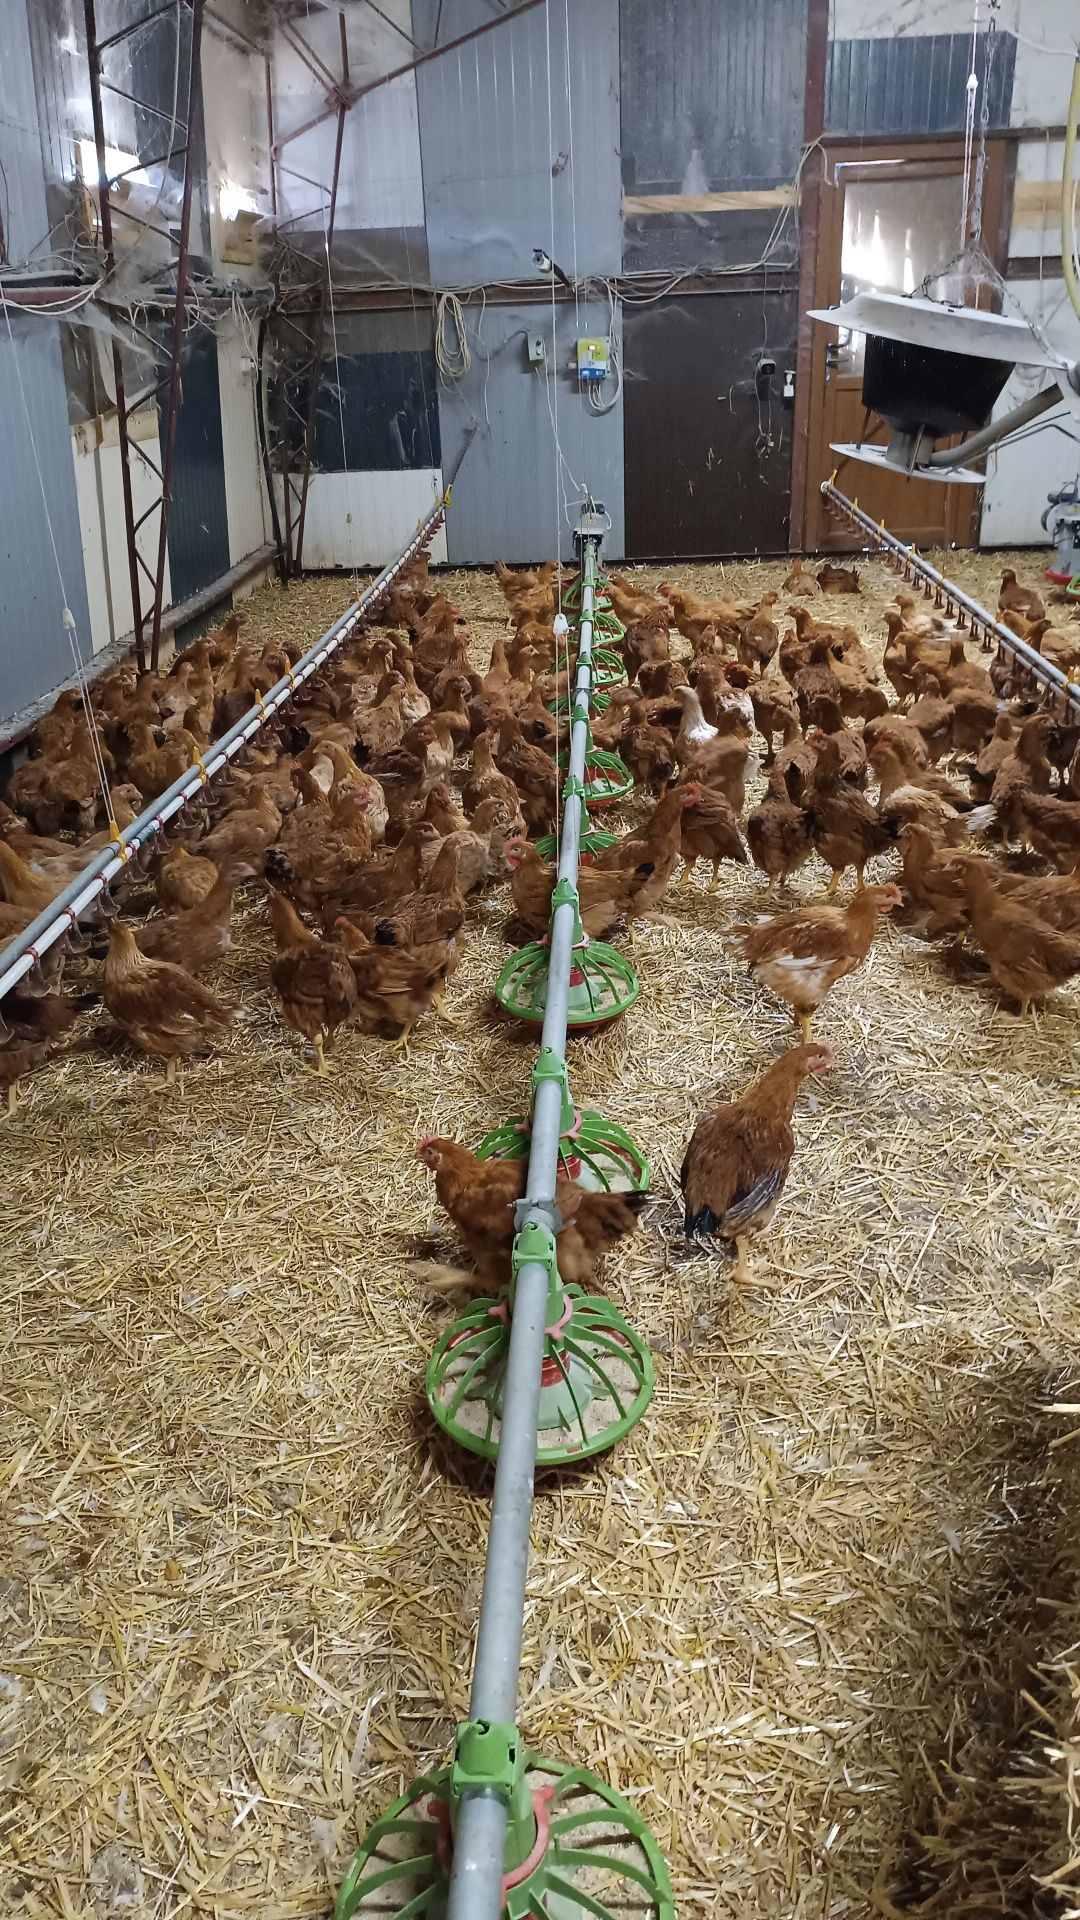 Găini de ouă, găini de curte, țară...